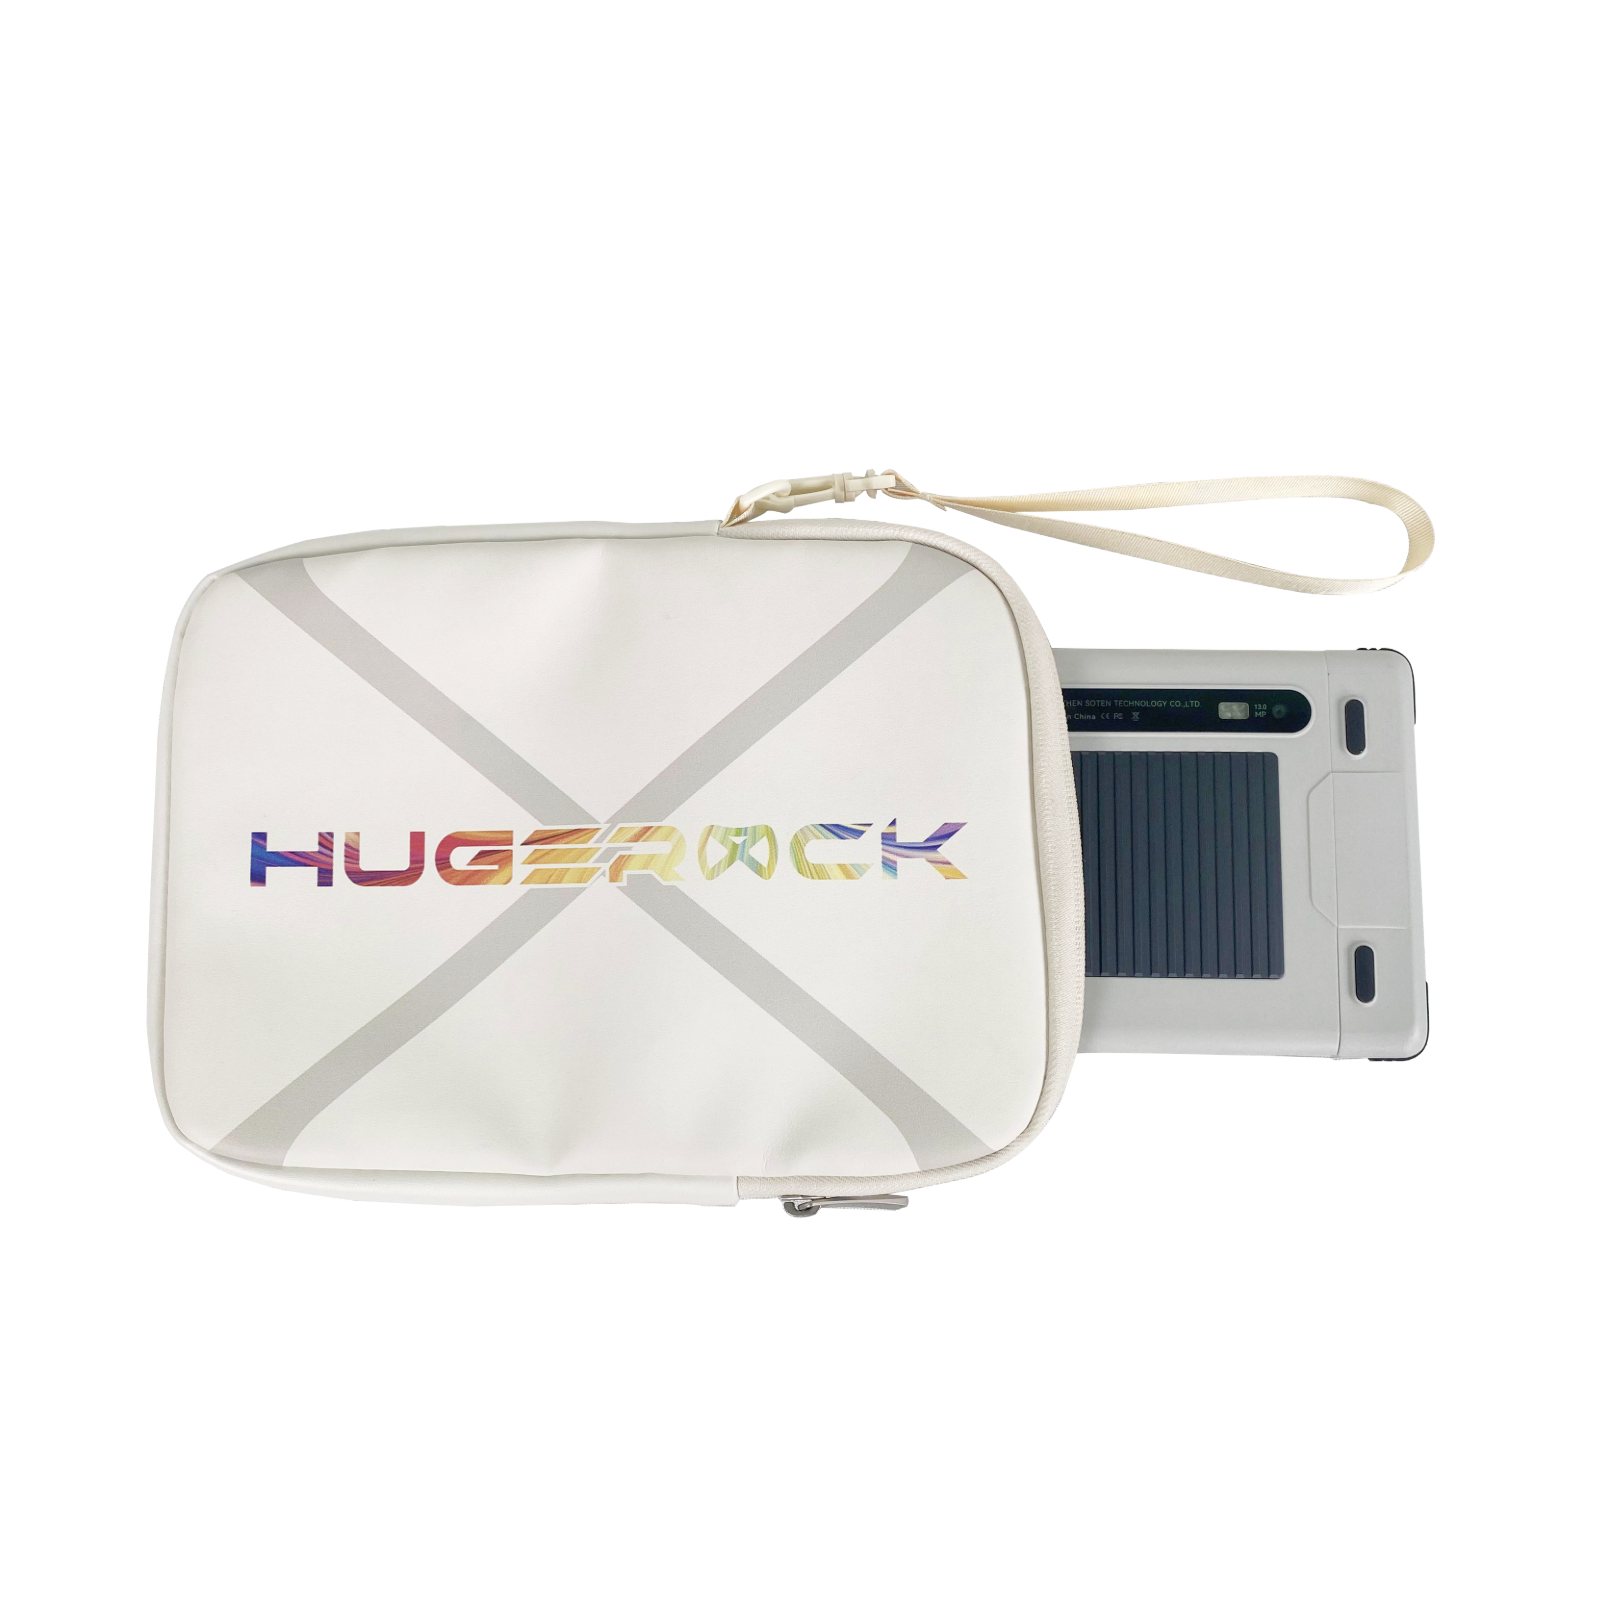 Hugerock Universal-Tablet-Tasche – wasserabweisendes PU-Leder, kratzfestes, stoßdämpfendes Futter für 9,7-Zoll-Tablets, kompatibel mit X7 und X70 